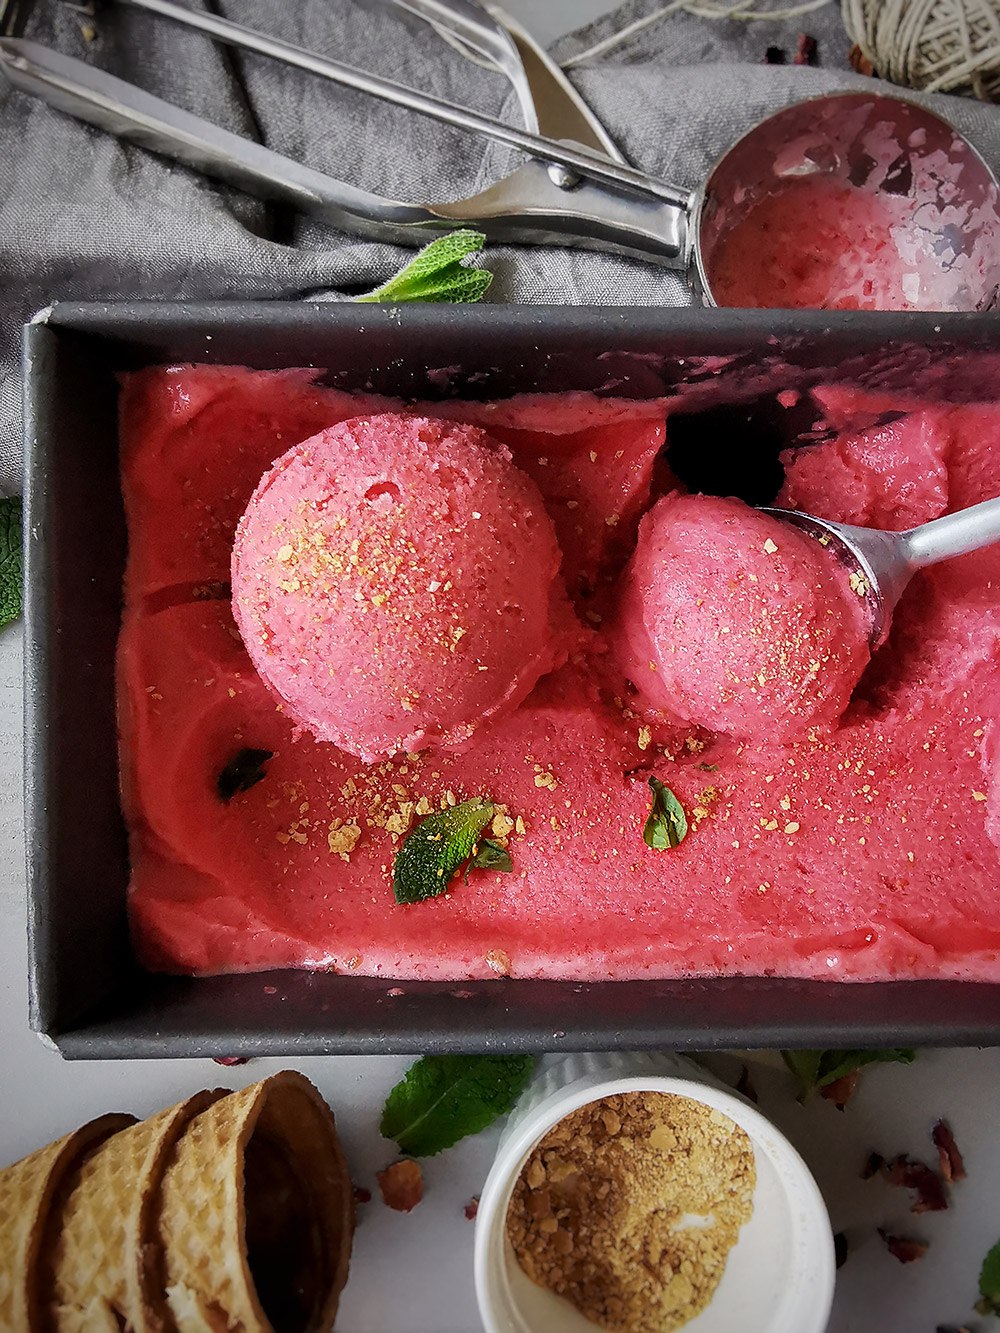 Strawberry and raspberry icecream